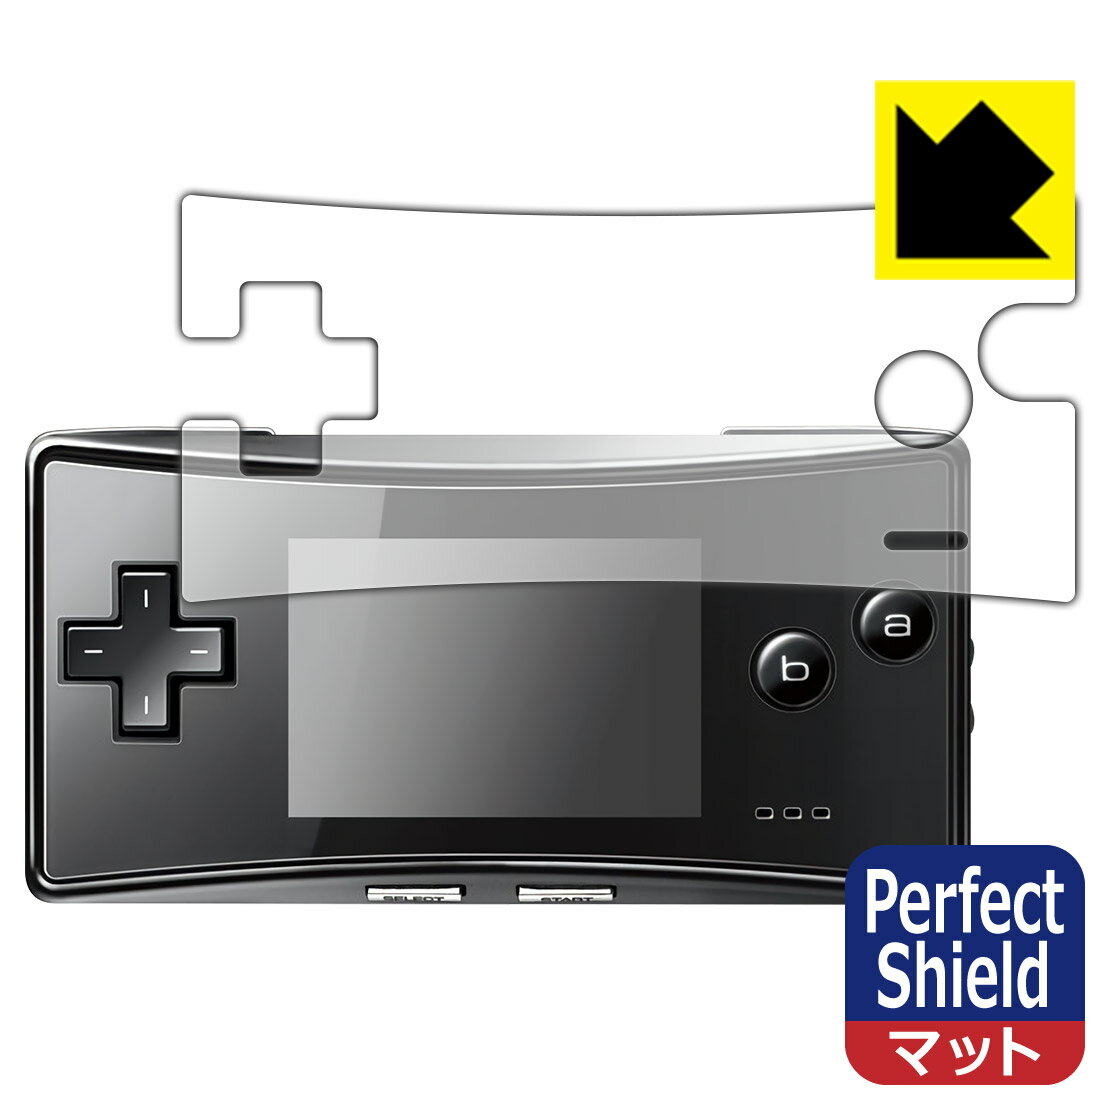 【1000円ポッキリ】【ポイント5倍】Perfect Shield ゲームボーイミクロ 用 液晶保護フィルム 日本製 自社製造直販 買いまわりにオススメ